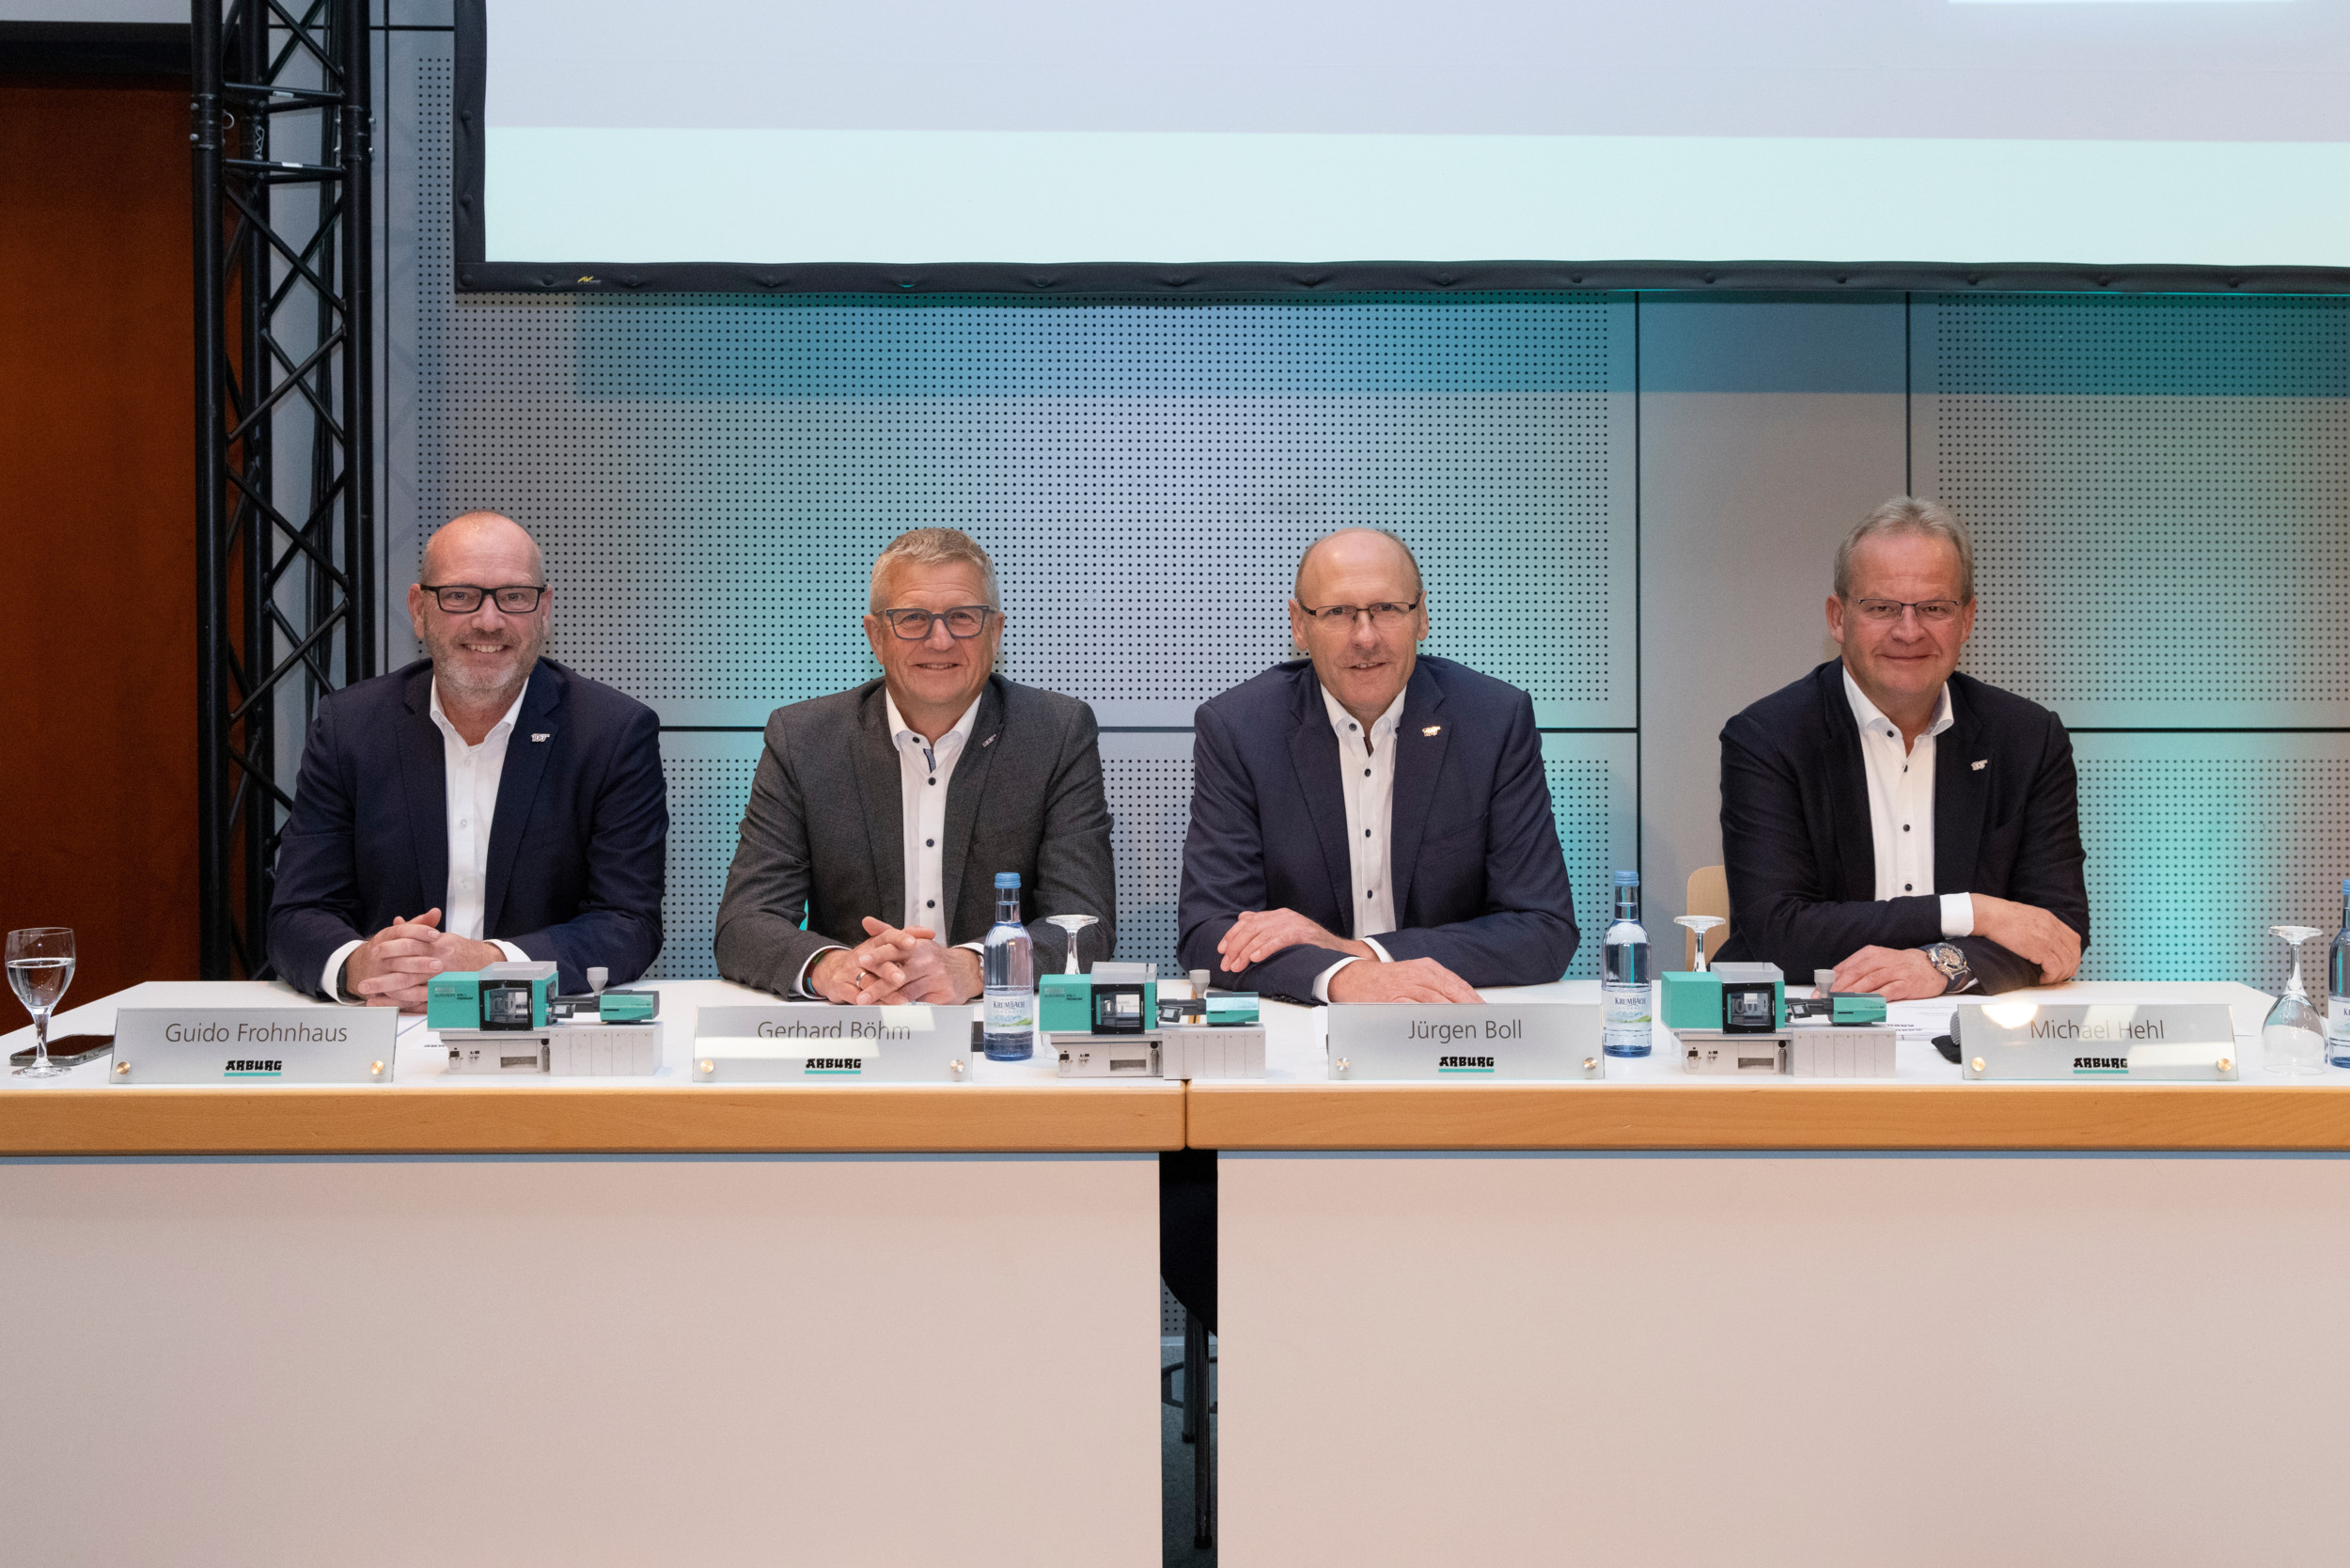 Die Arburg-Geschäftsführung auf der Pressekonferenz am ersten Tag der Fakuma in guter Stimmung (von links): Guido Frohnhaus, Gerhard Böhm, Jürgen Boll und Michael Hehl.